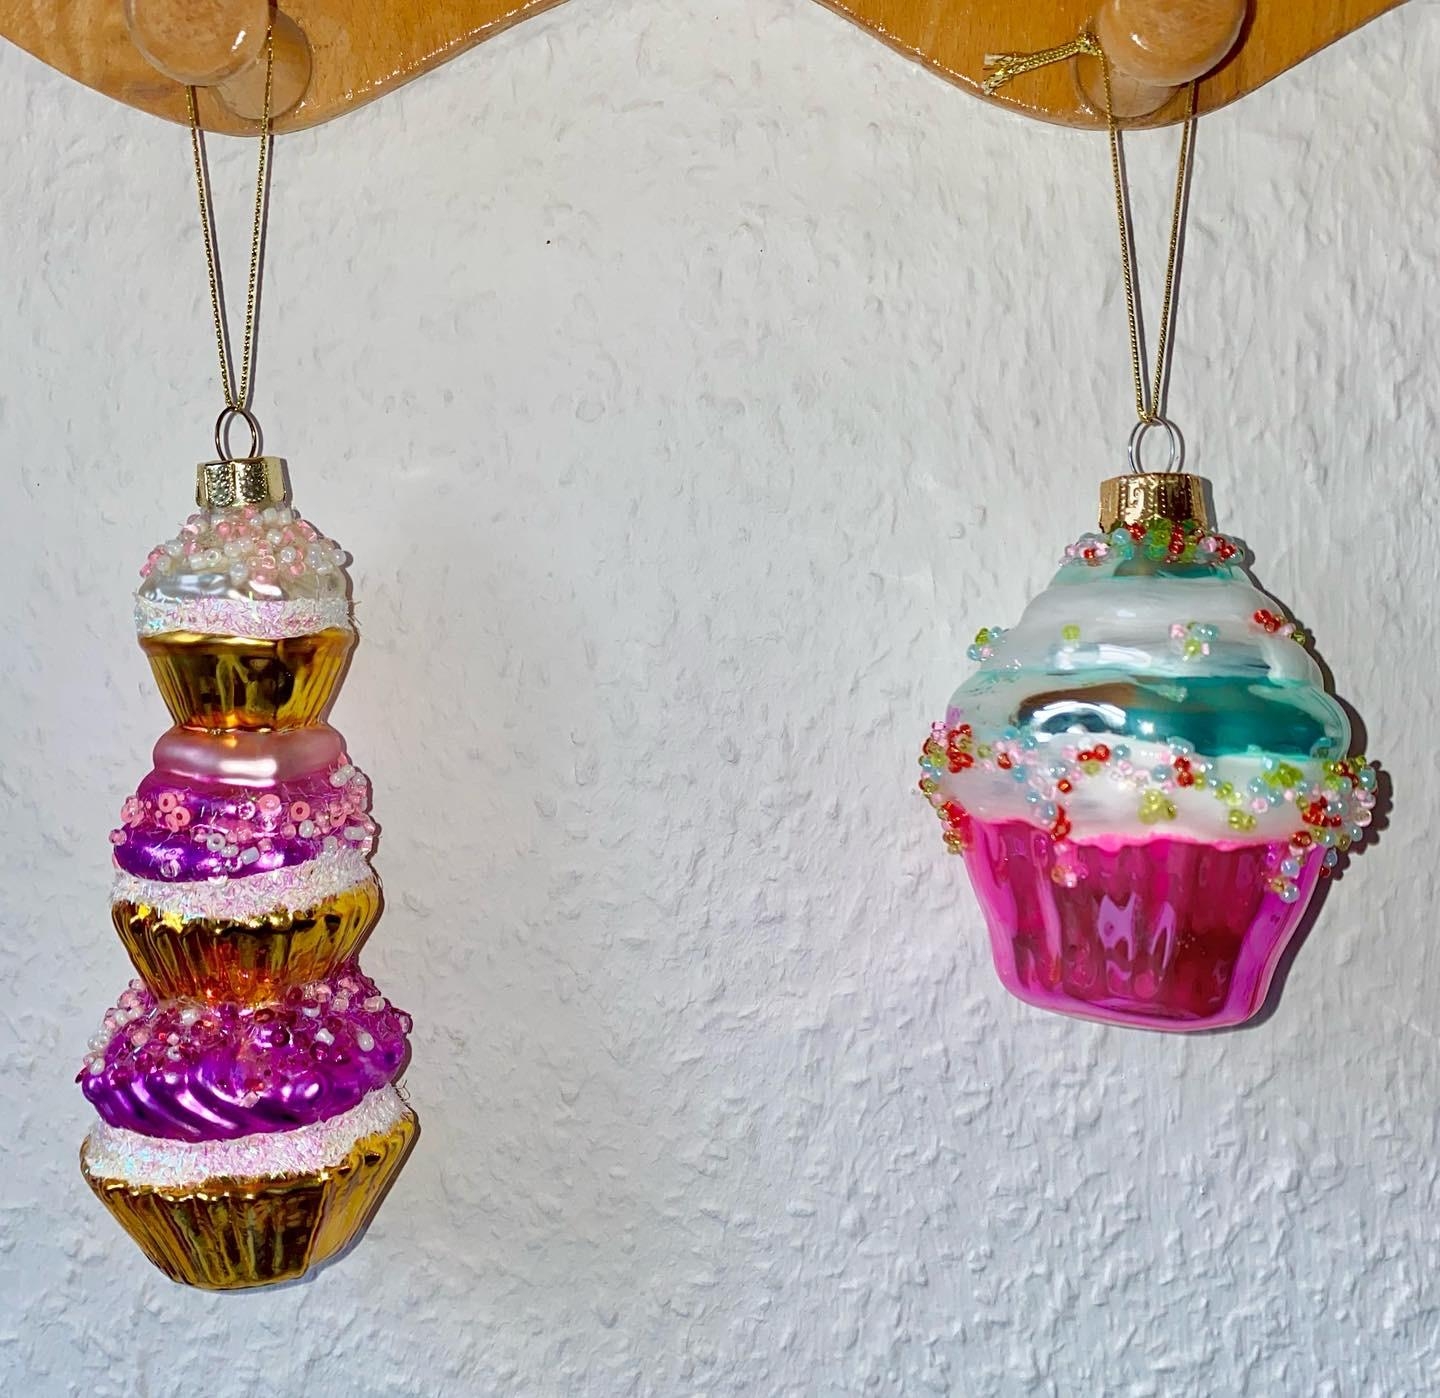 Cupcakes gehen immer! :)
#baumschmuck #cupcakes #deko #weihnachtsbaumanhänger 